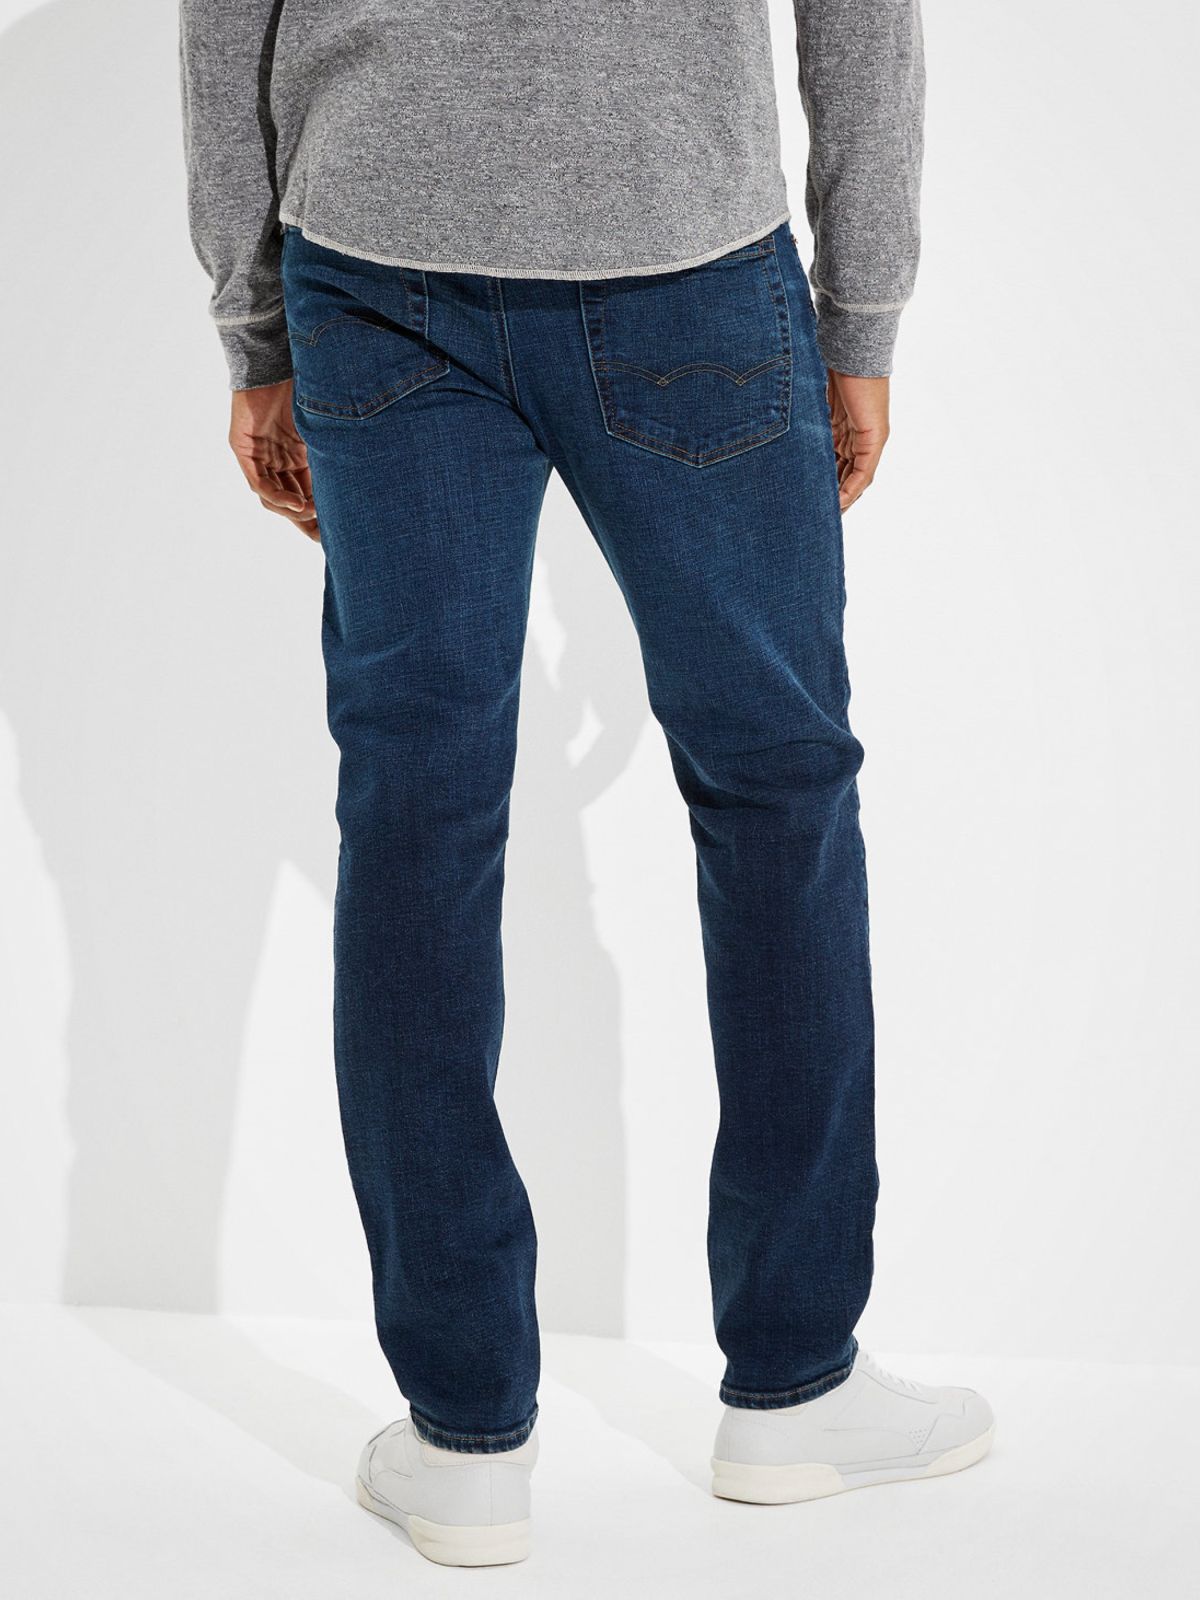  ג'ינס ארוך בגזרת Slim Straight של AMERICAN EAGLE